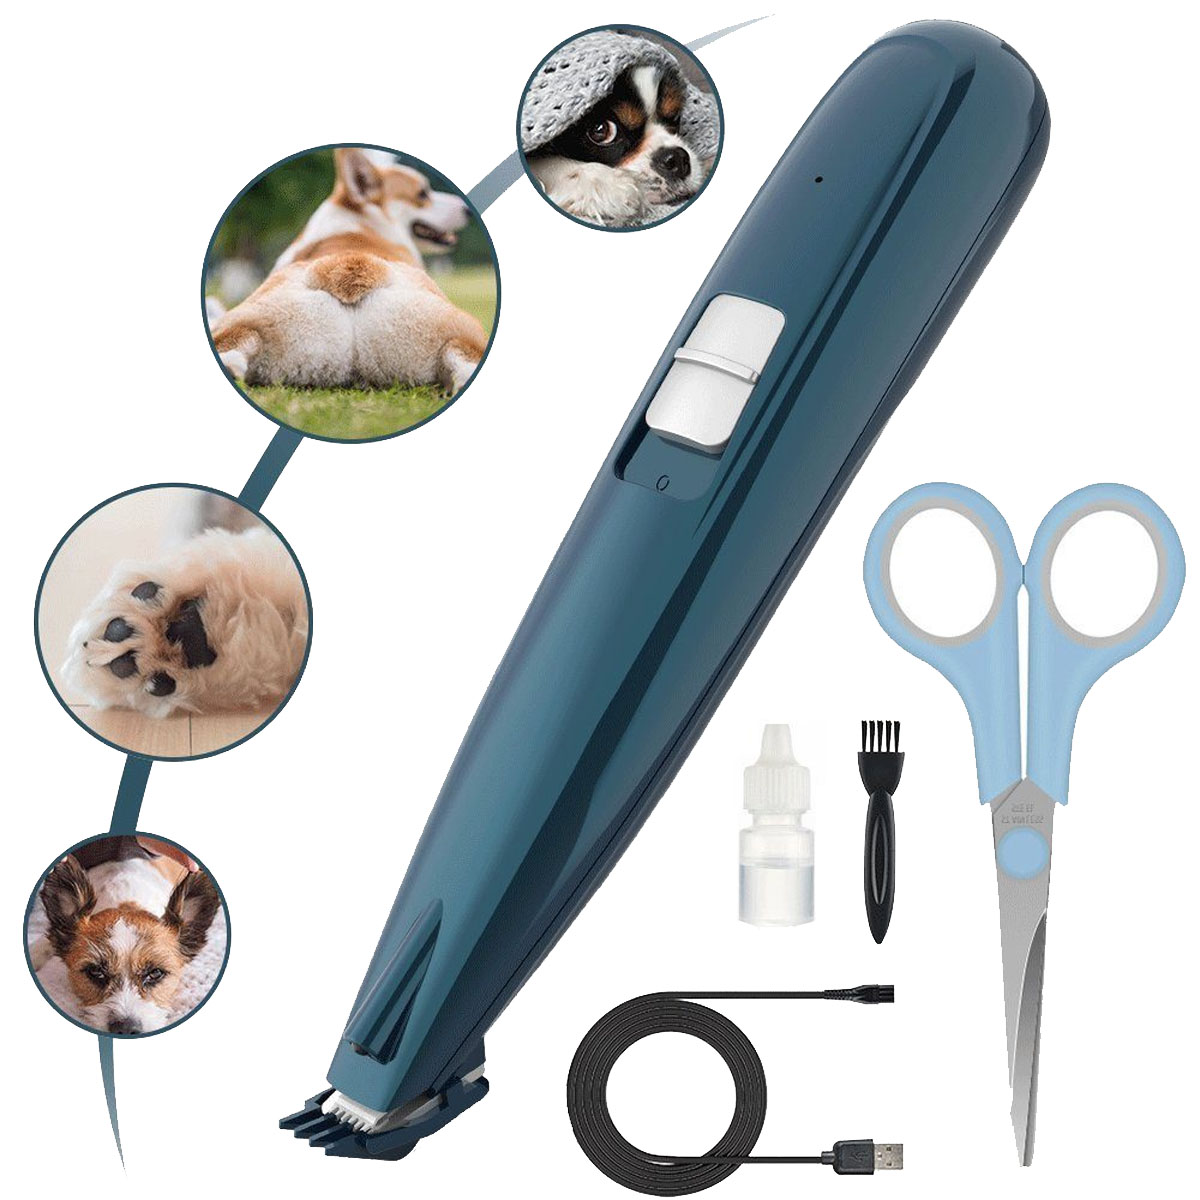 elektrischer Haartrimmer für Fußhaarschneider, Stück, Rasierapparat HUNKA Haustiere, Trimmer 5